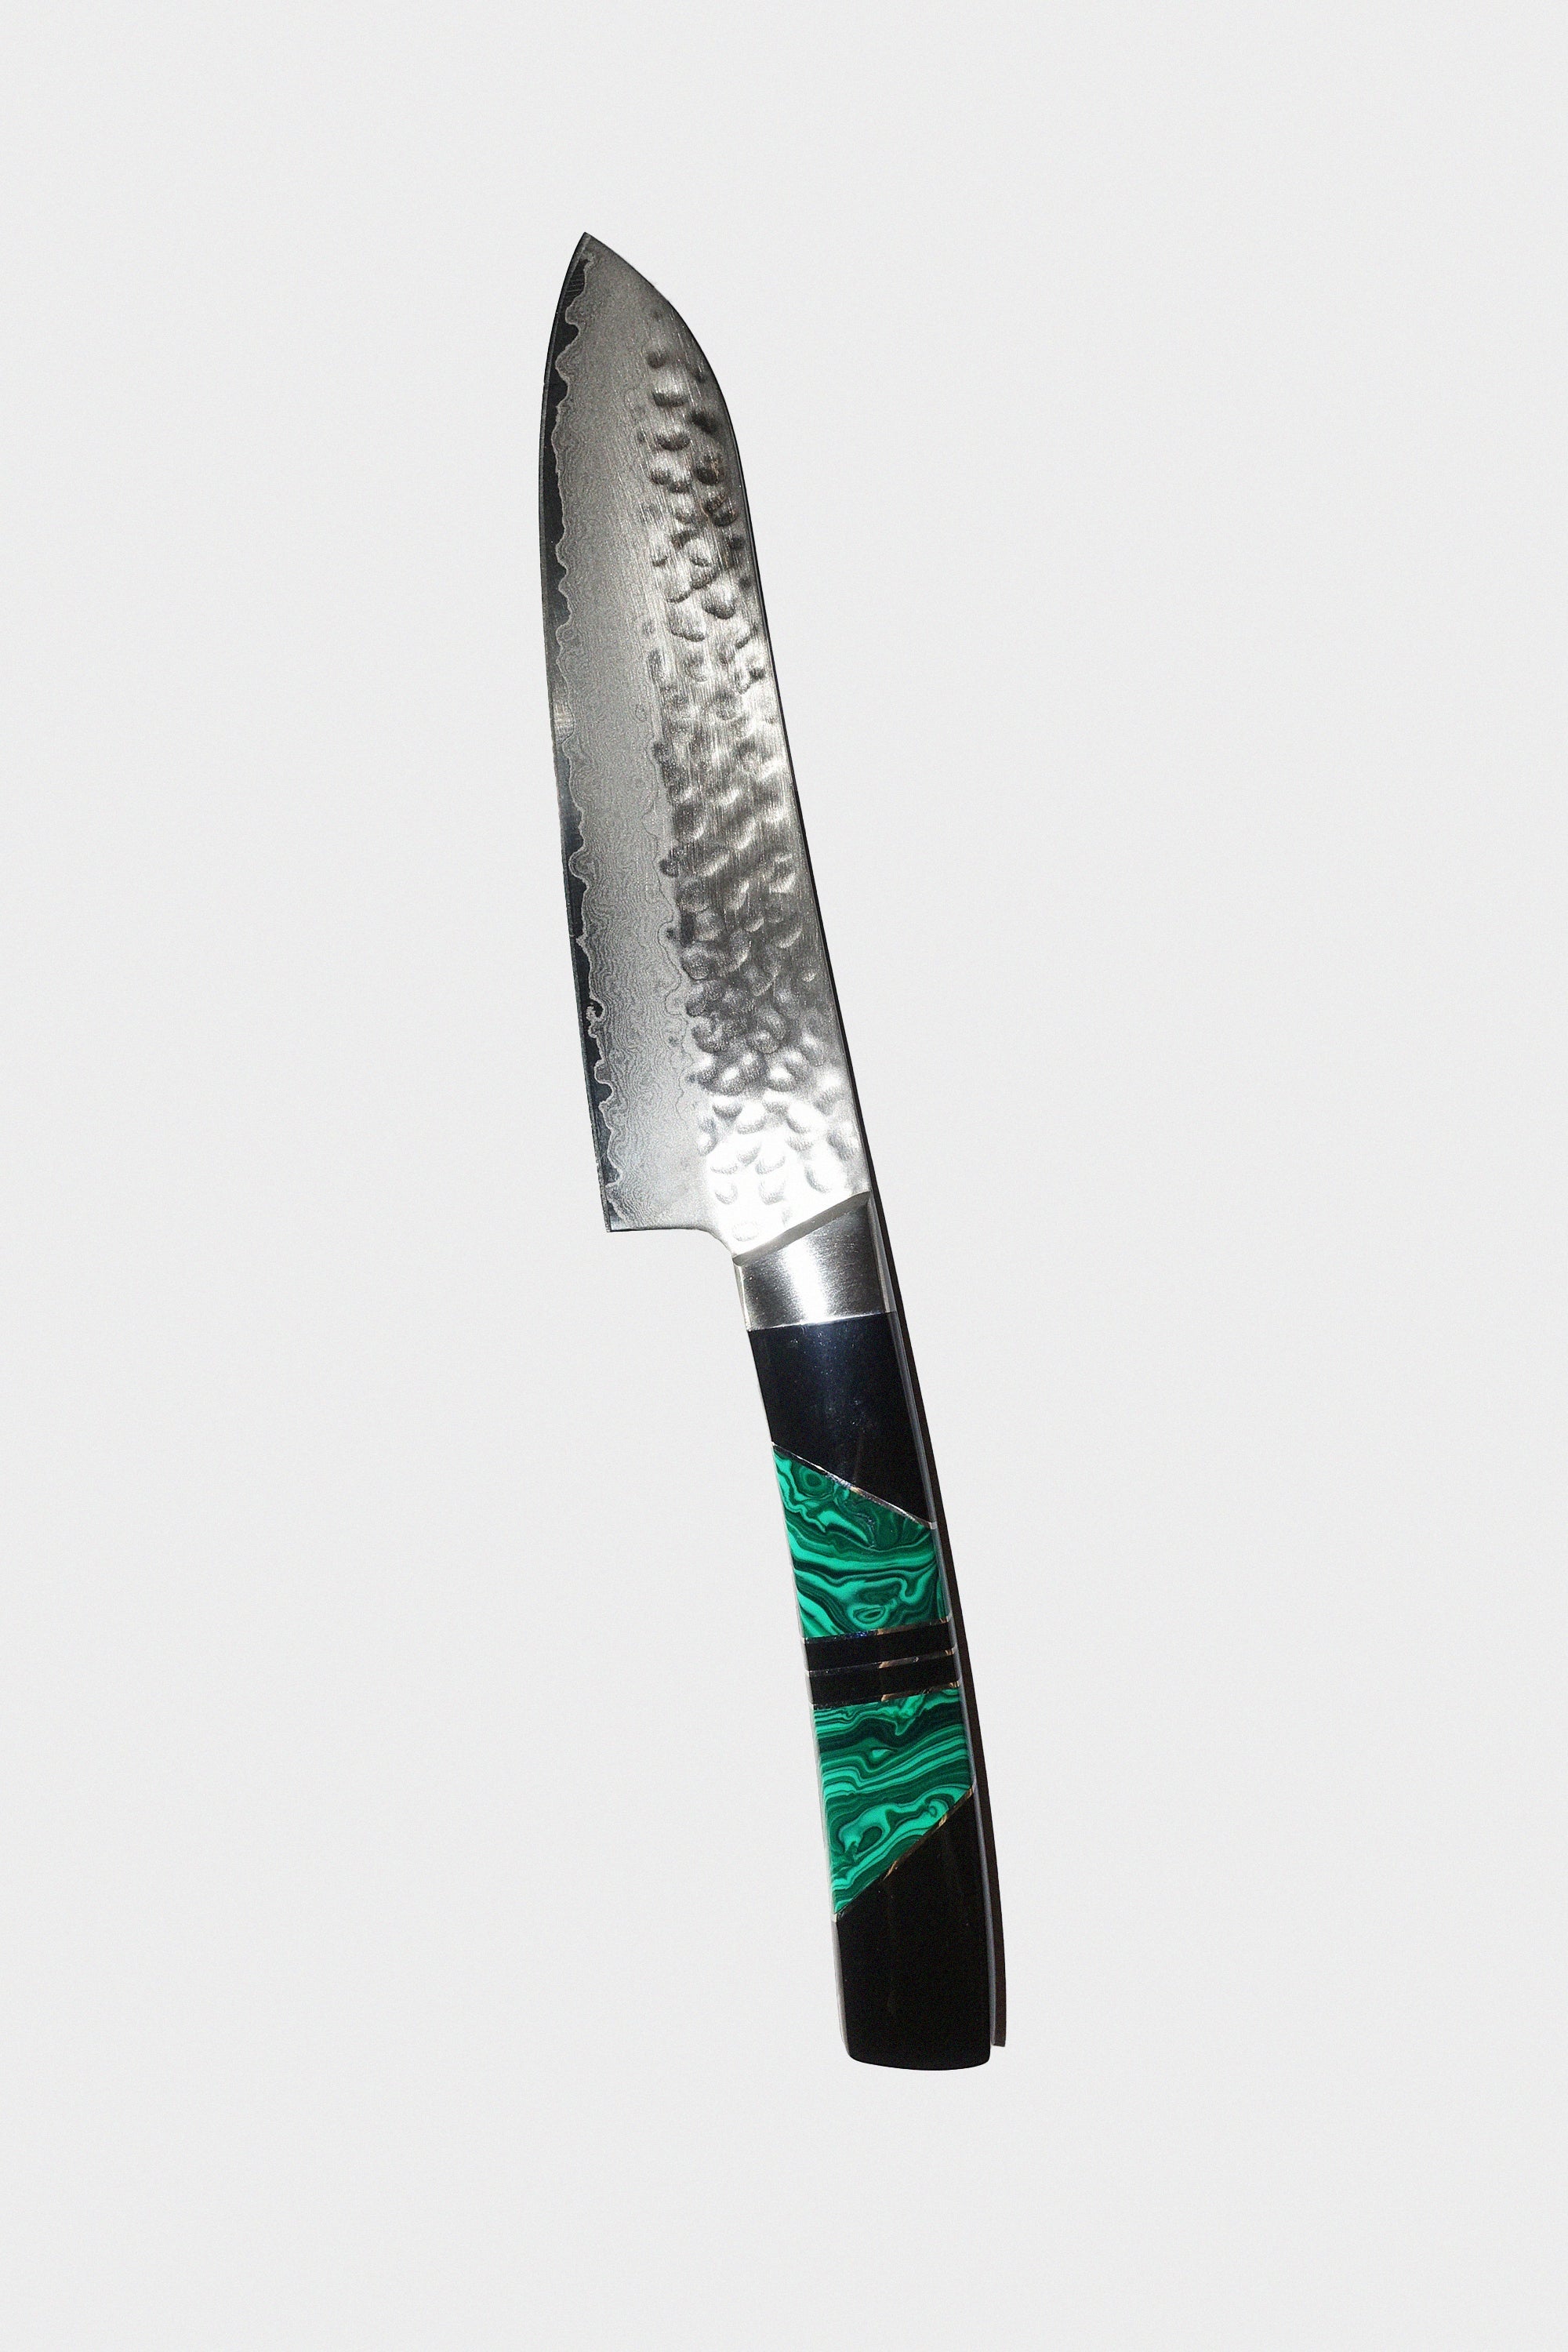 5" Santoku Knife in Malachite